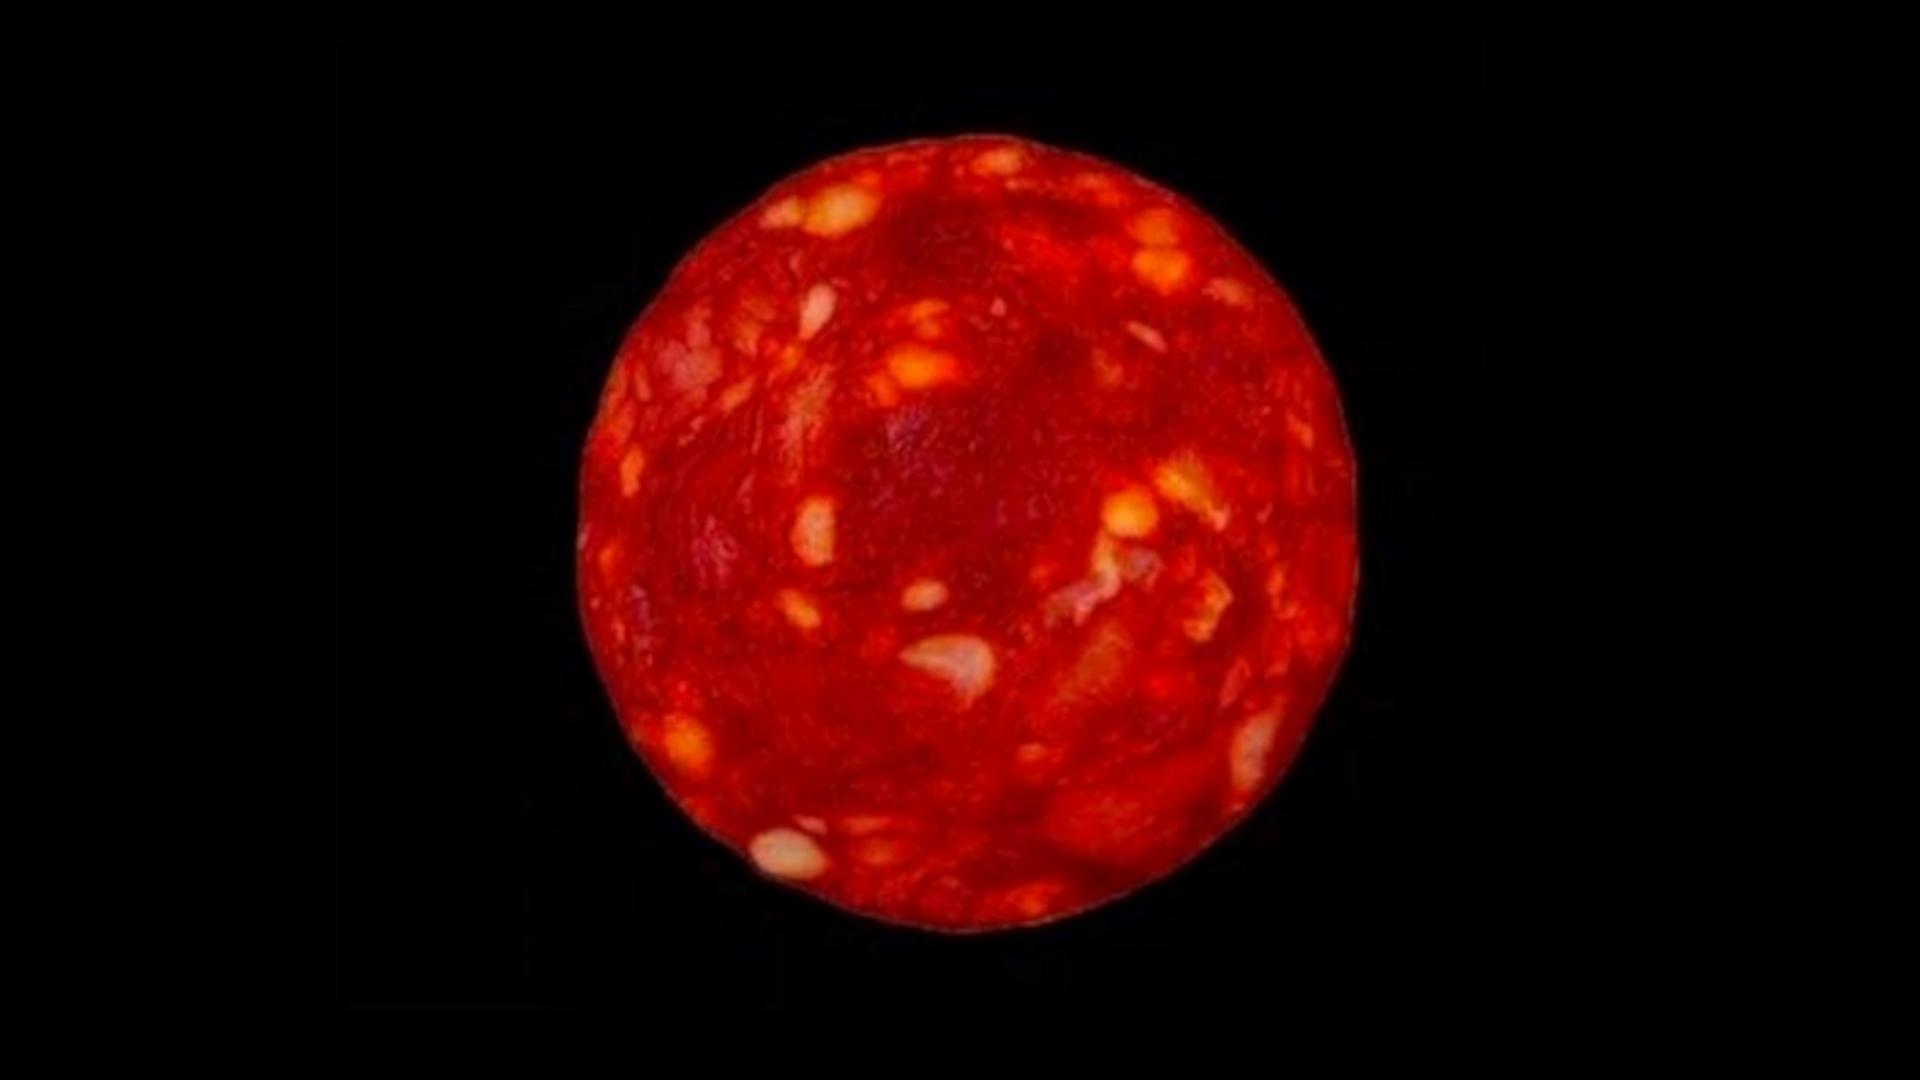 Proxima Centauri, gesehen von James Webb? Nein! Eine Scheibe Chorizo. (Etienne Klein)